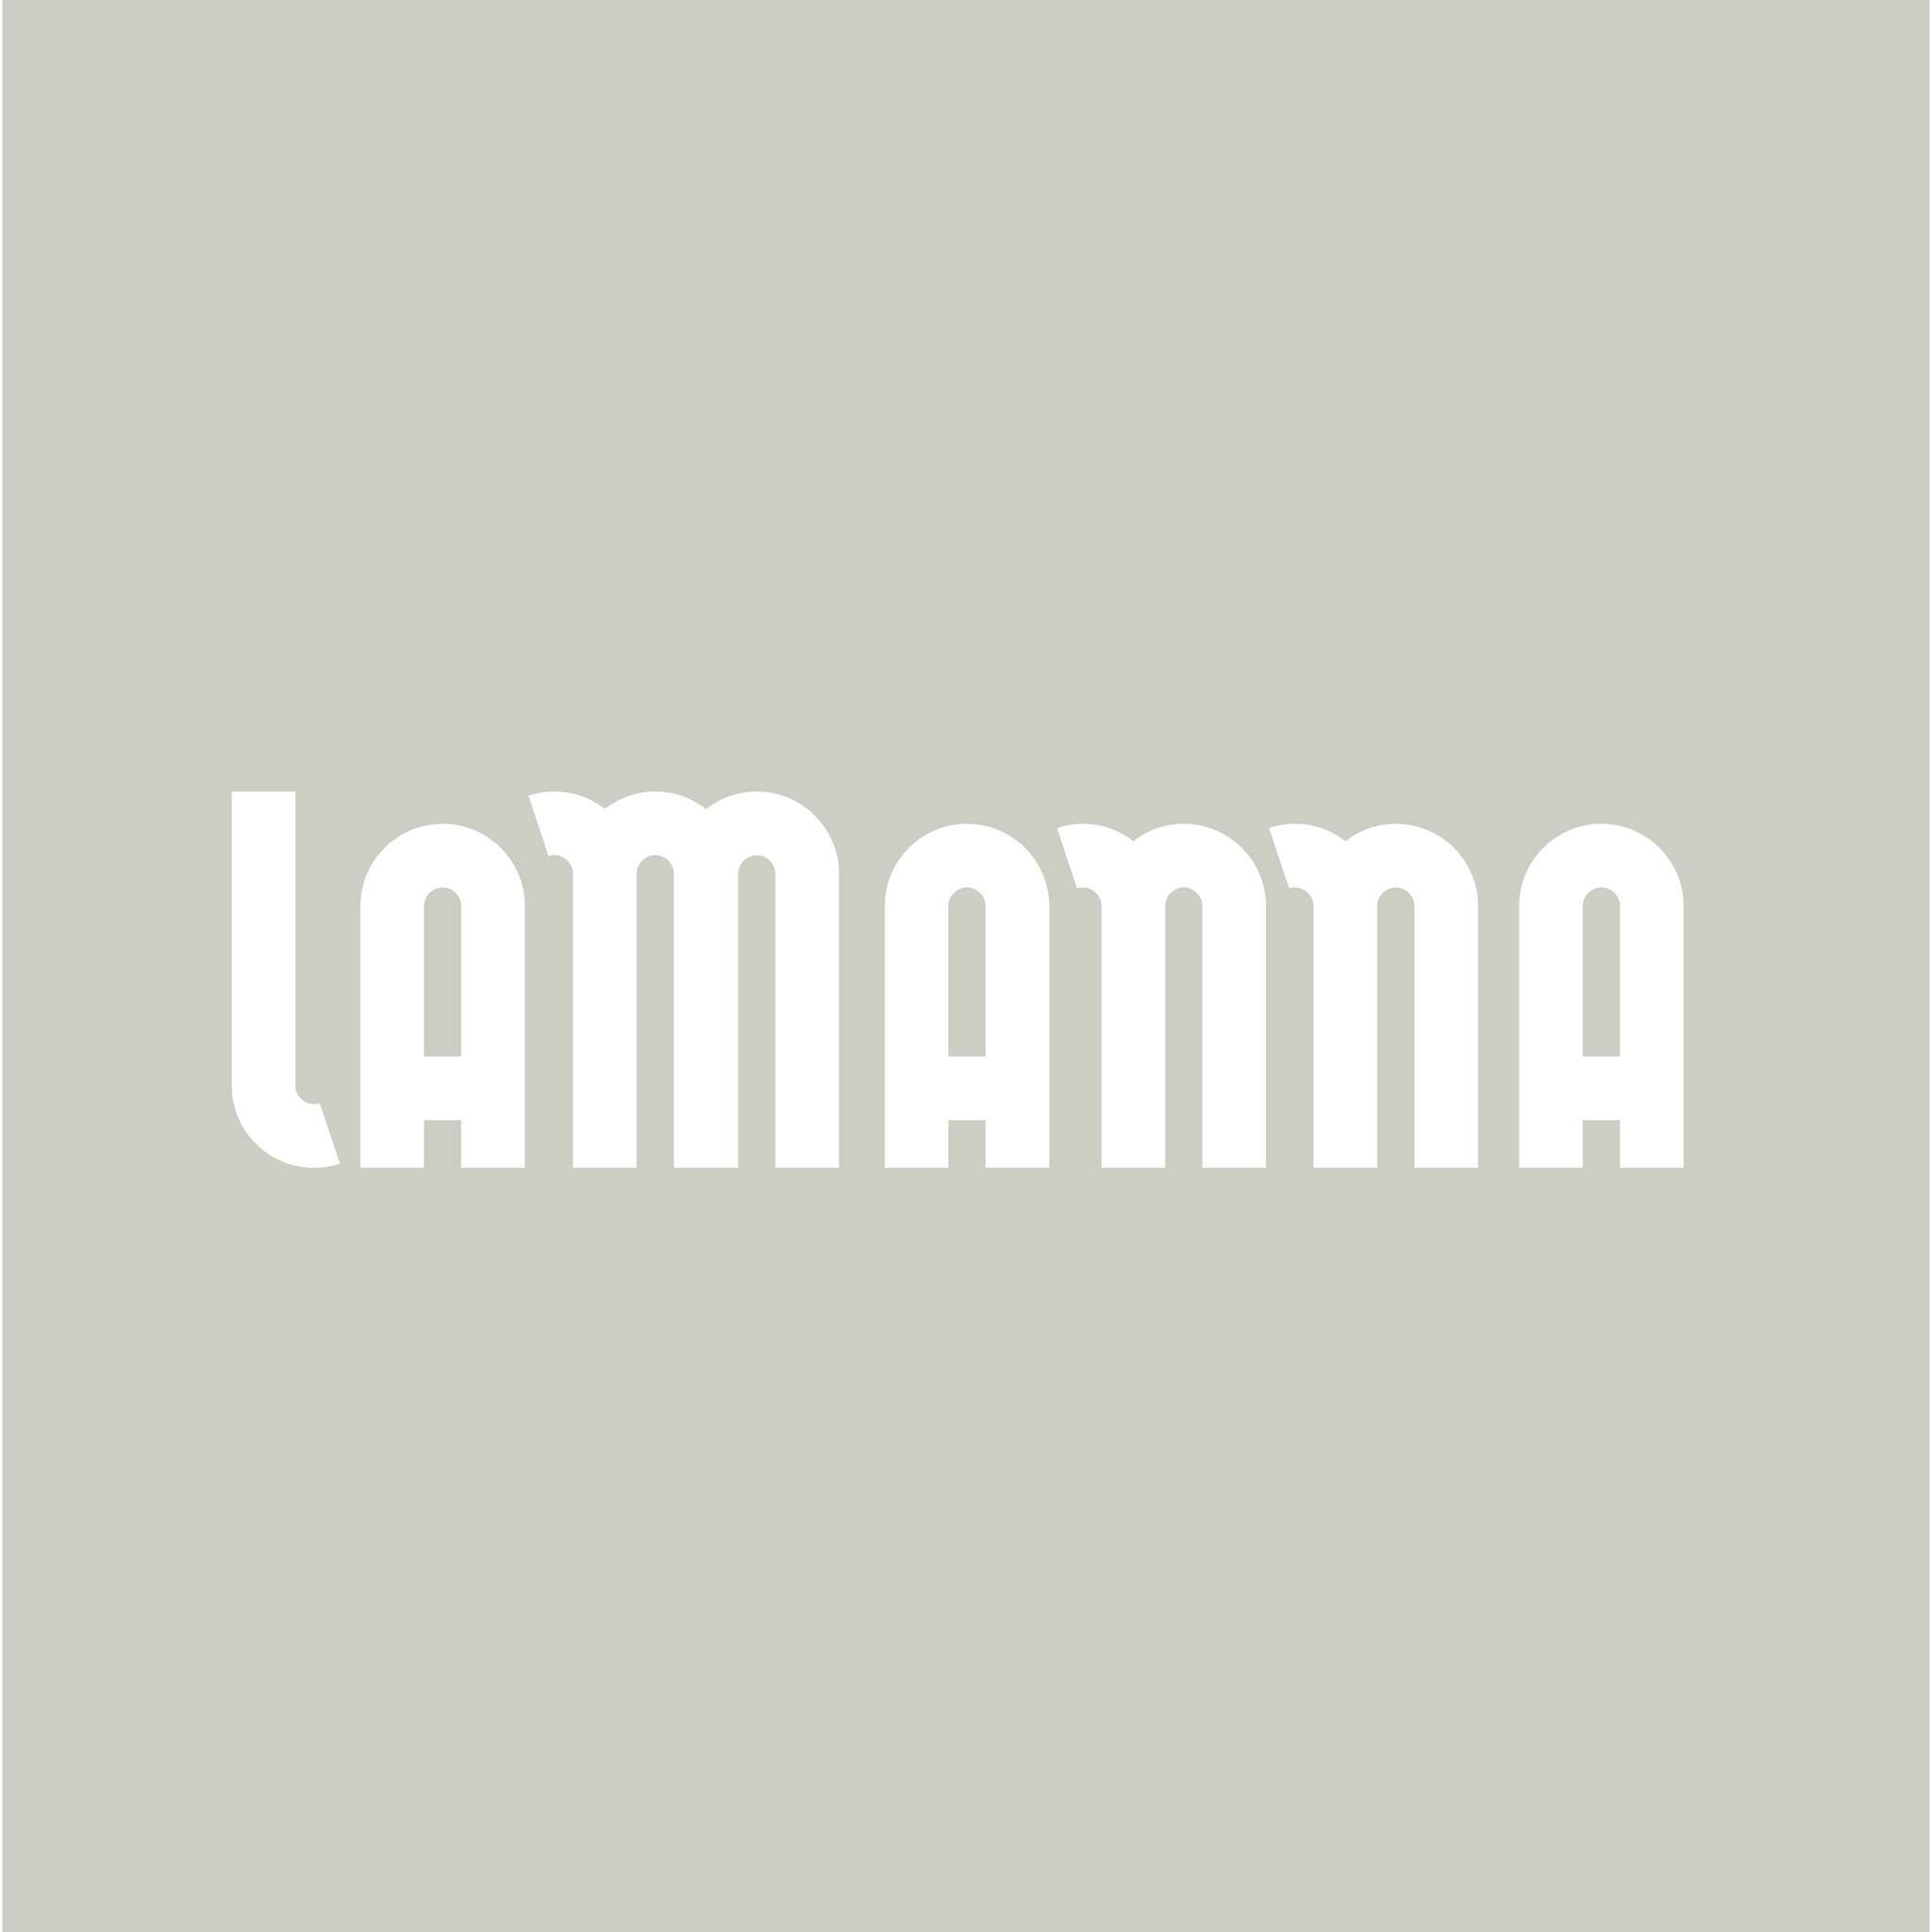 LaManna